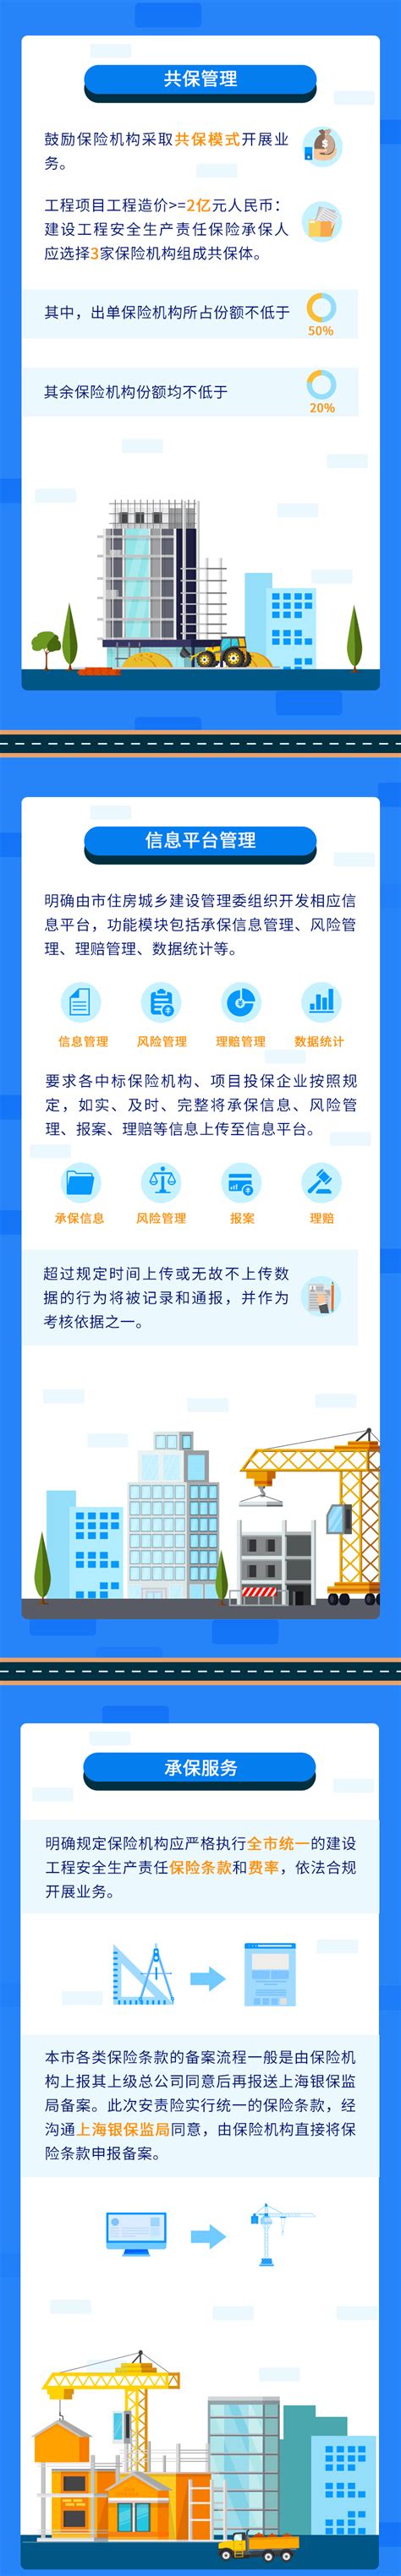 上海市建设工程服务平台